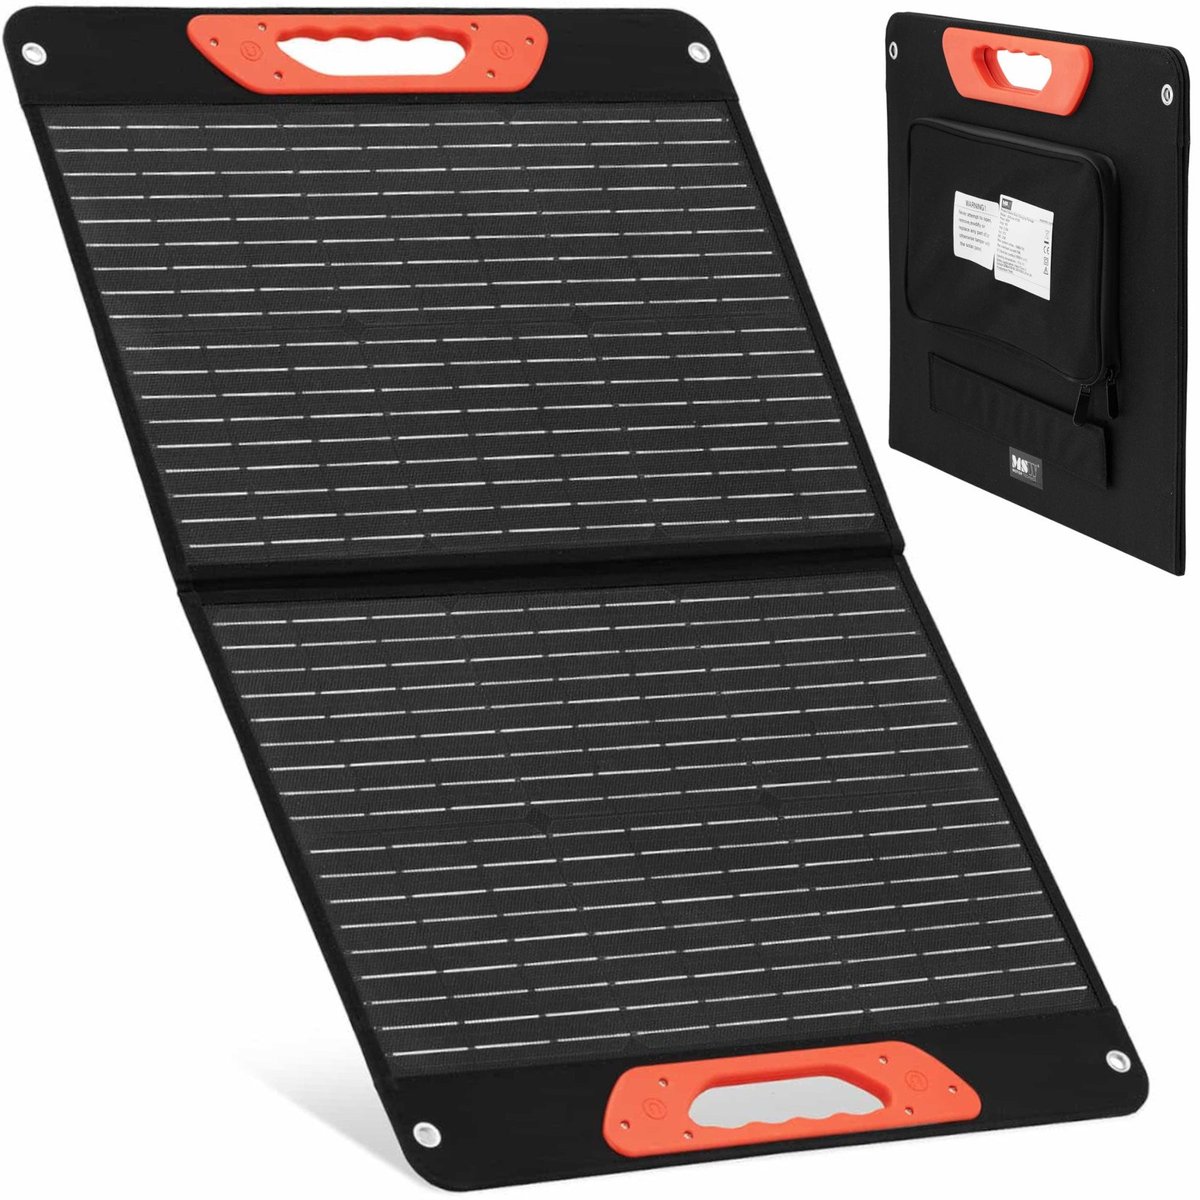 Zdjęcia - Pozostałe zabawki MSW Ładowarka panel solarny składany turystyczny kempingowy 2 x USB 60 W 